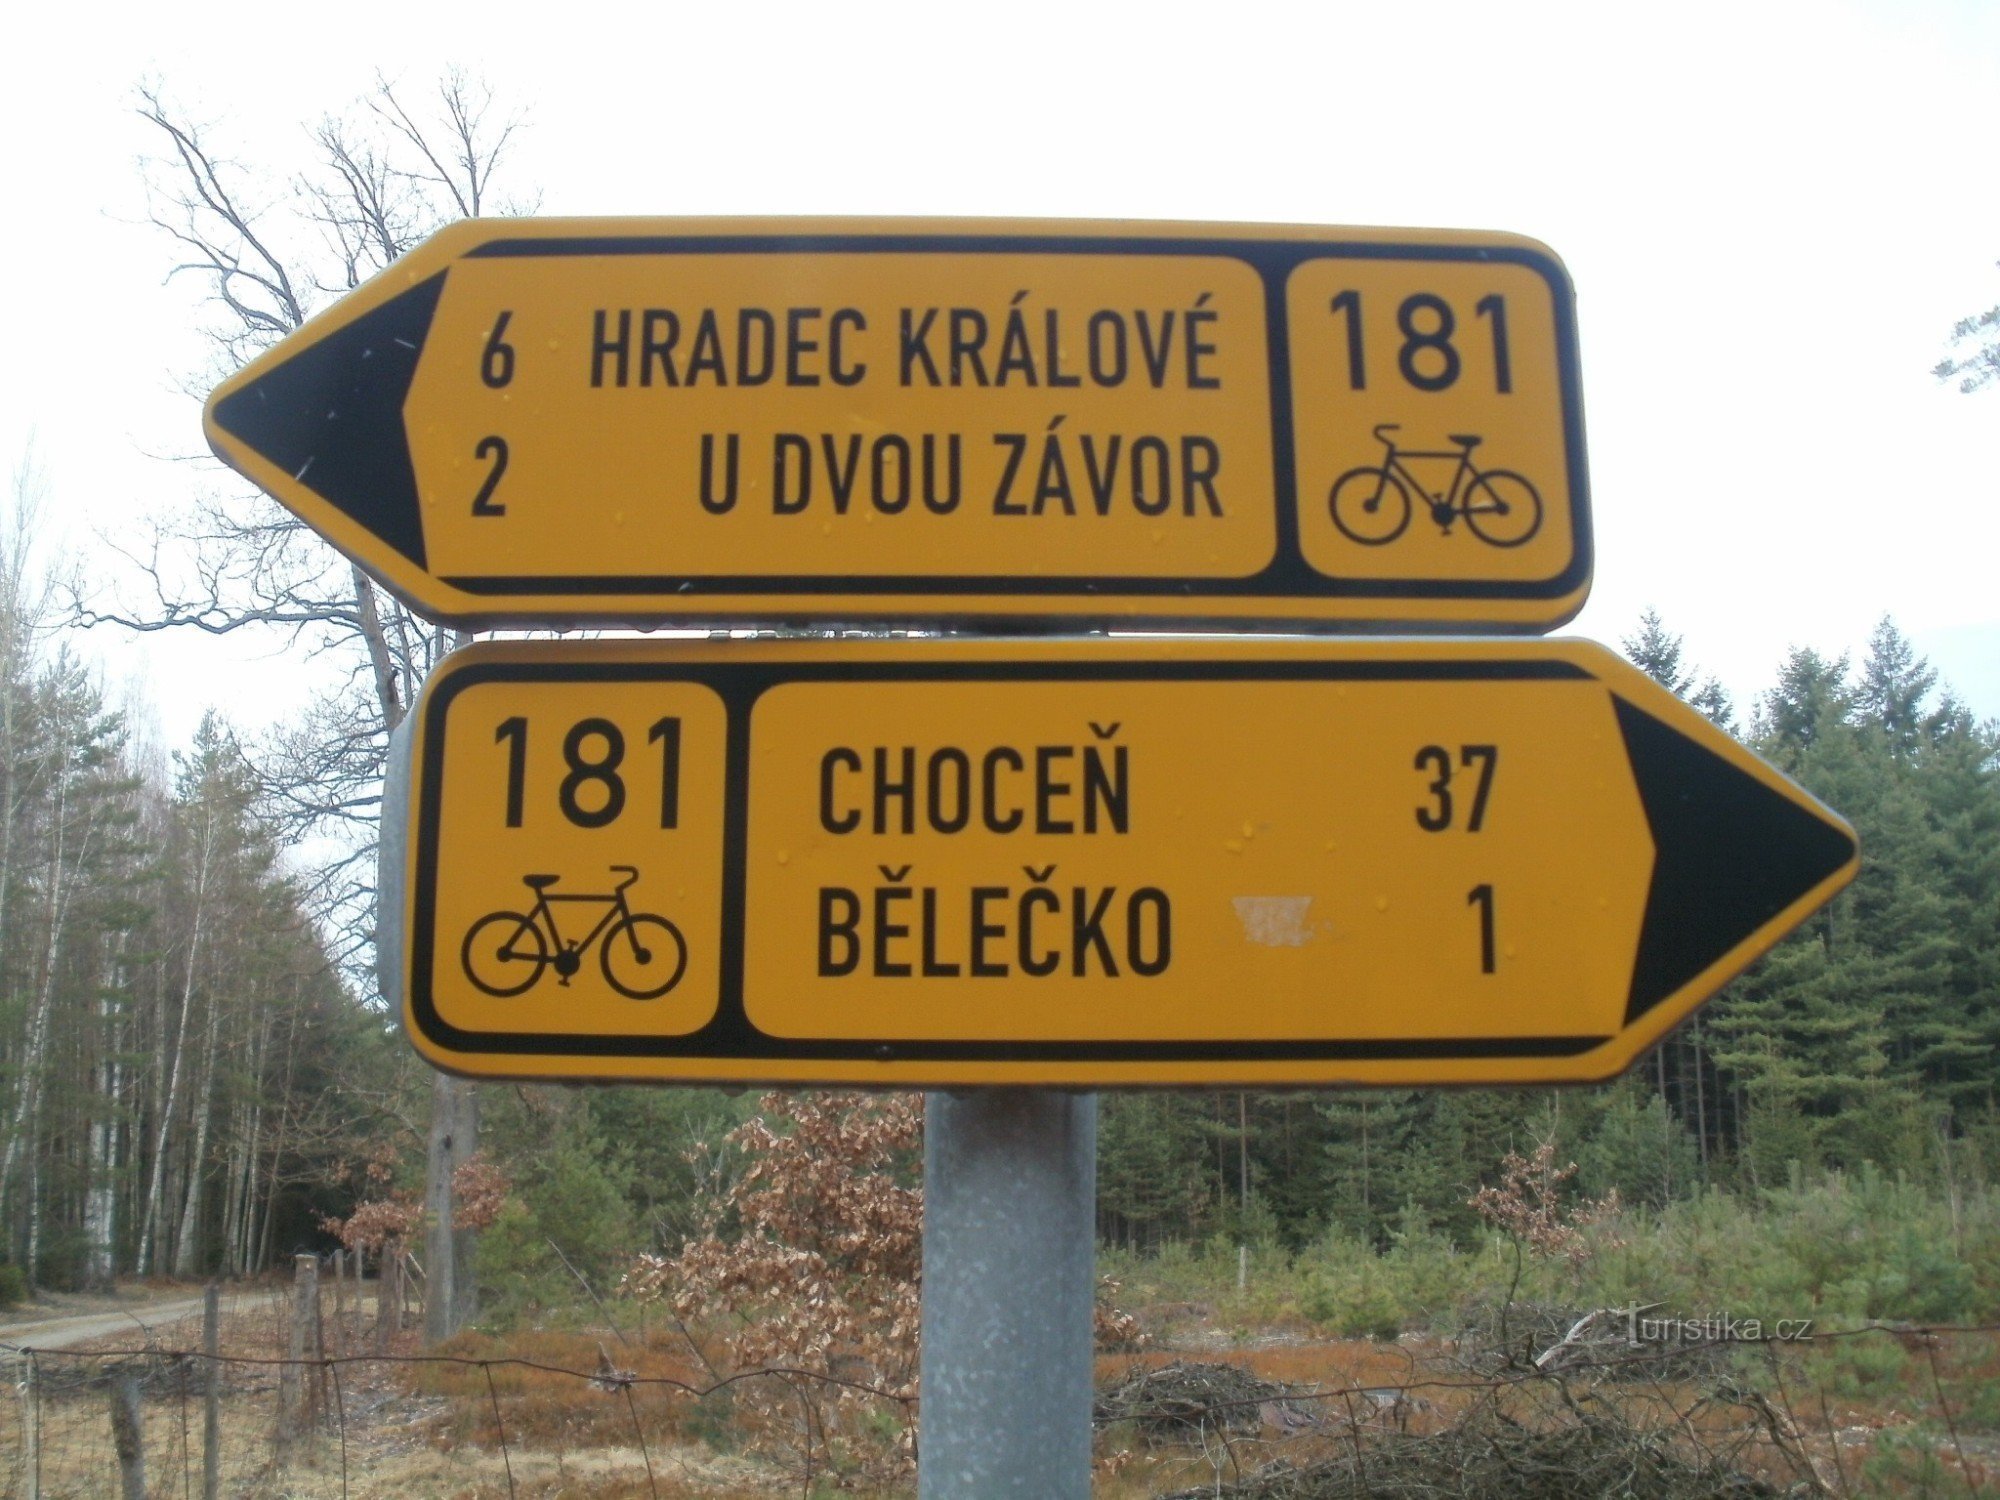 placa de sinalização turística de bicicleta em Hradečnica